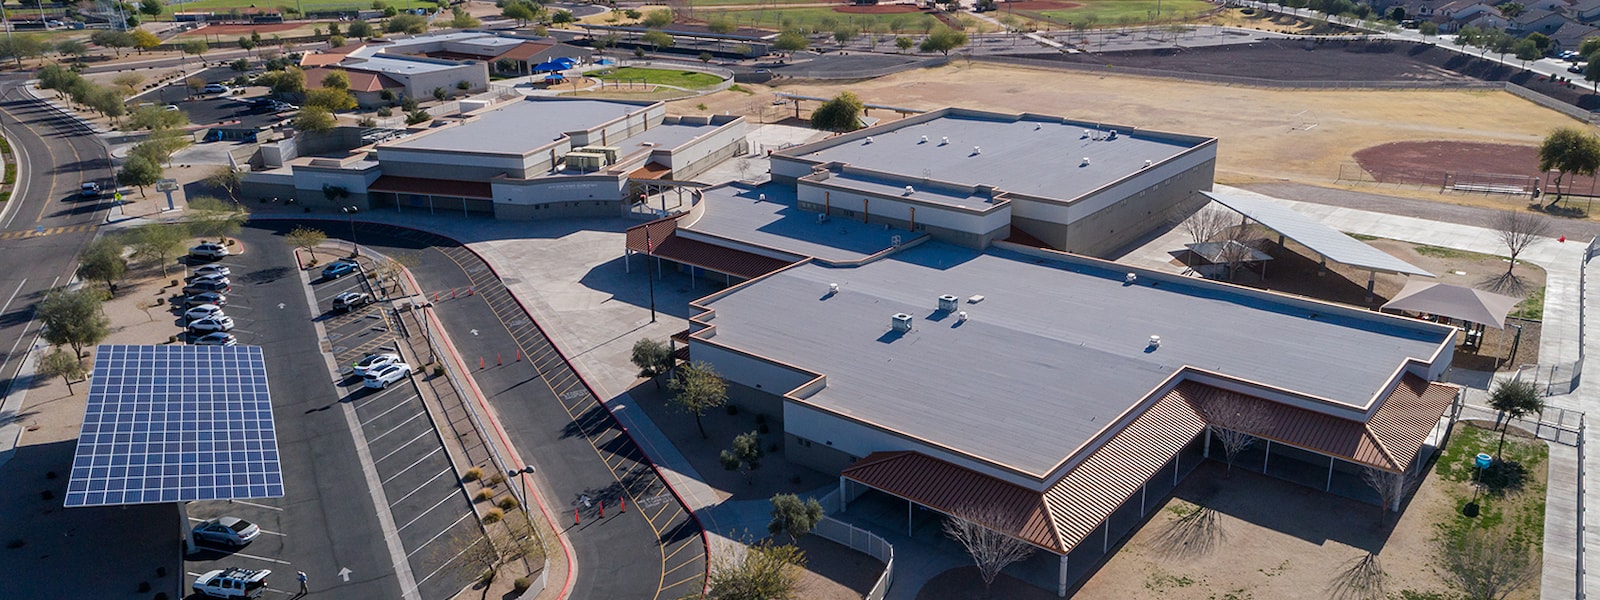 Aerial view of Western Peaks elementary school.